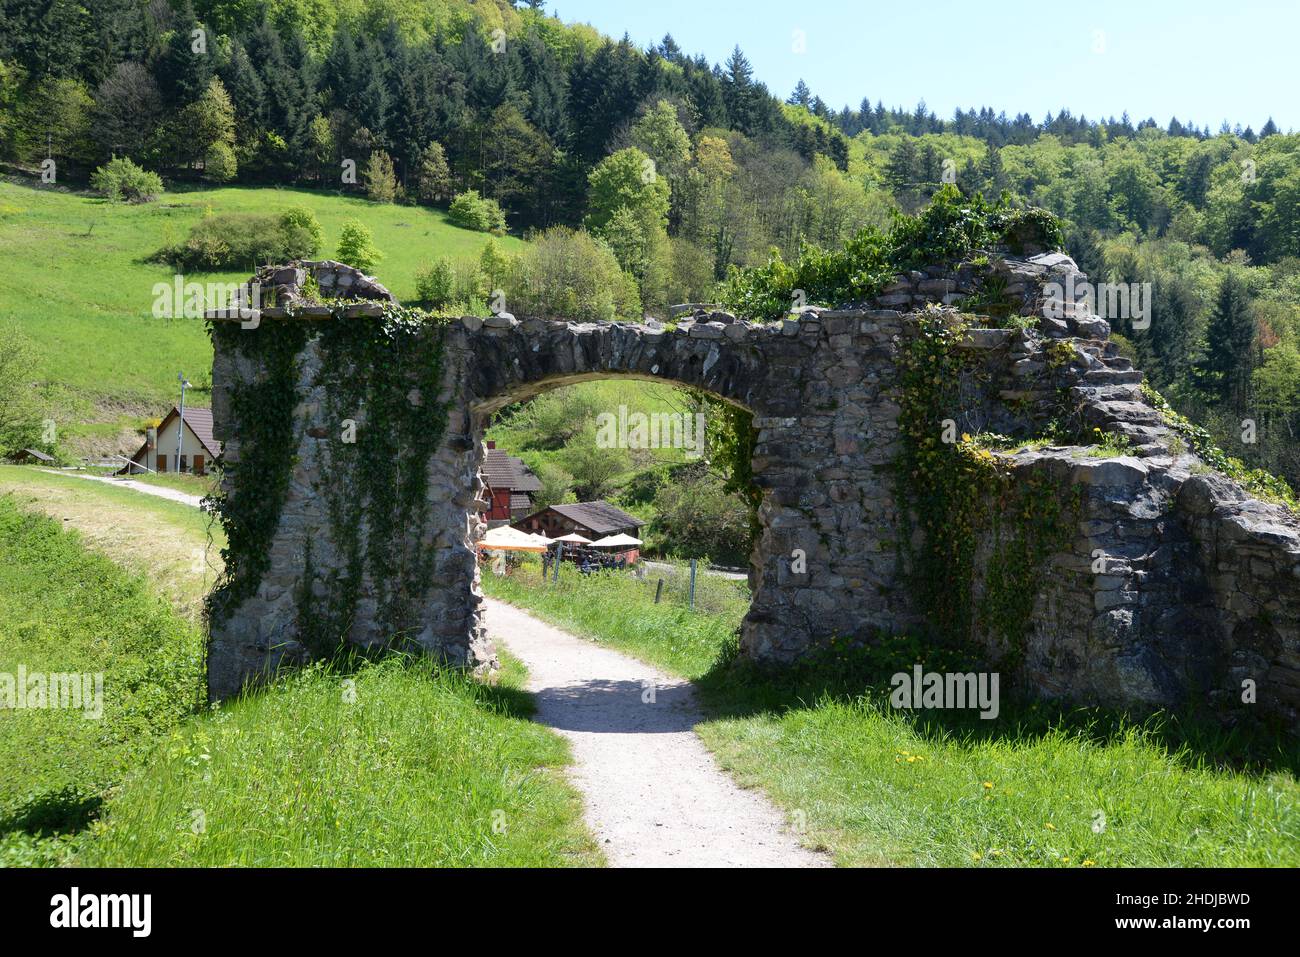 gate, archway, schauenburg, gates, archways Stock Photo